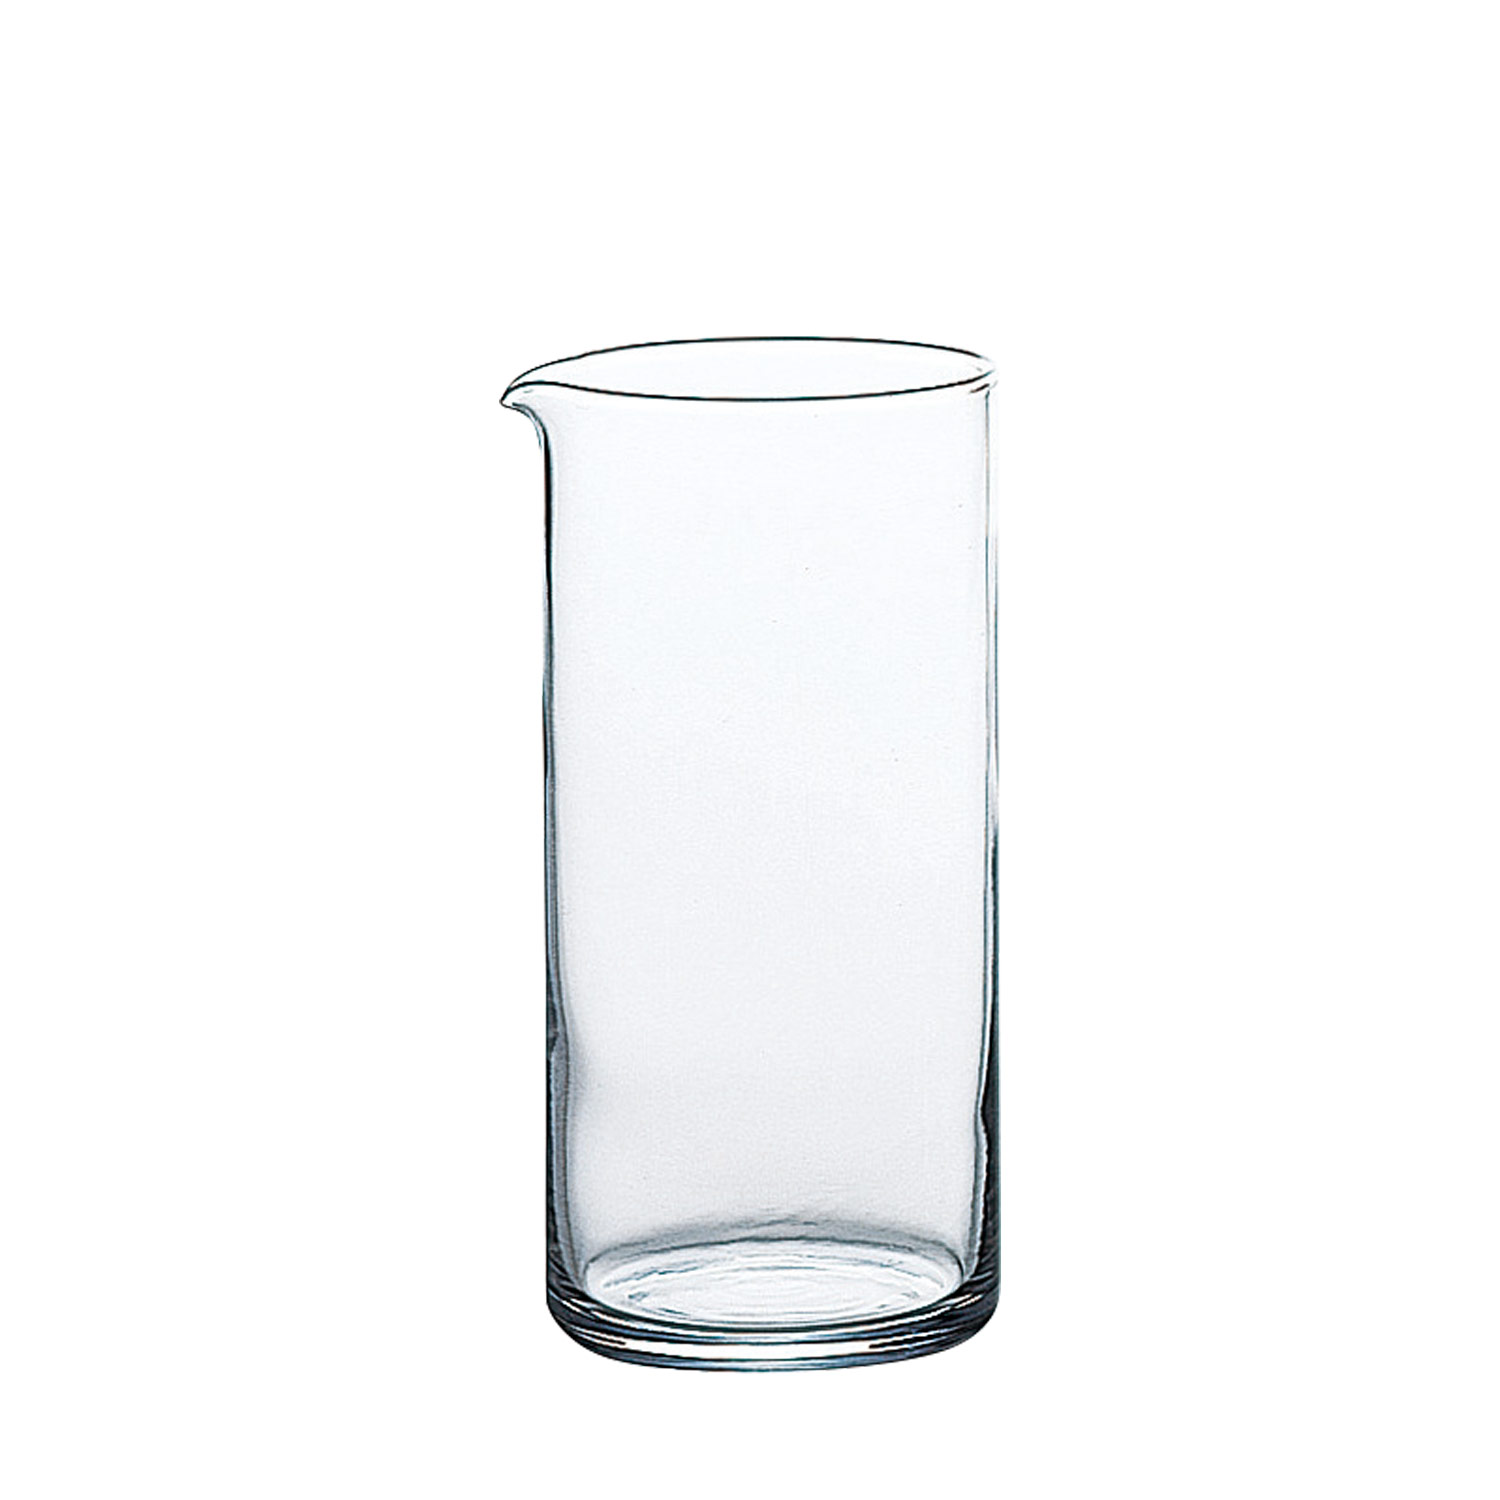 קאראף ישר 710 מ"ל (גובה 17 ס"מ) זכוכית יפנית